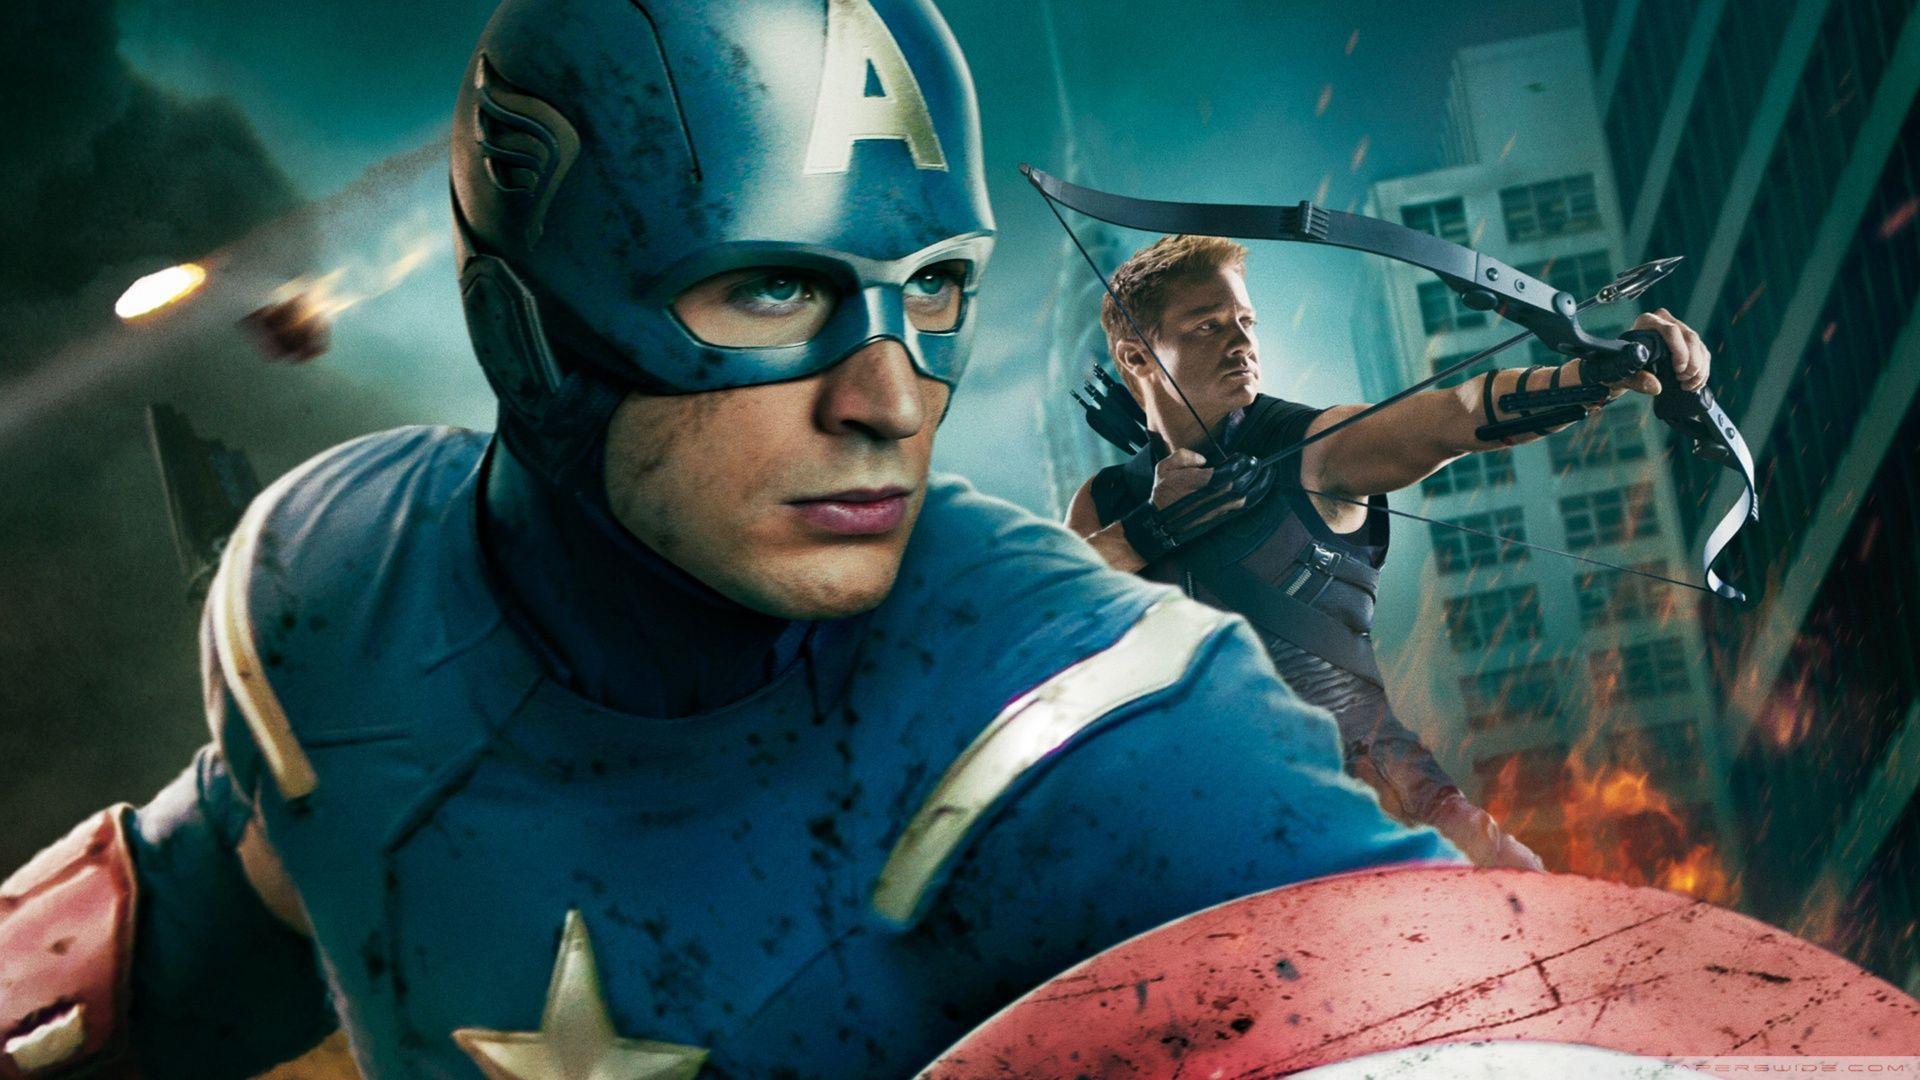 The Avengers HD desktop wallpaper, High Definition, Fullscreen